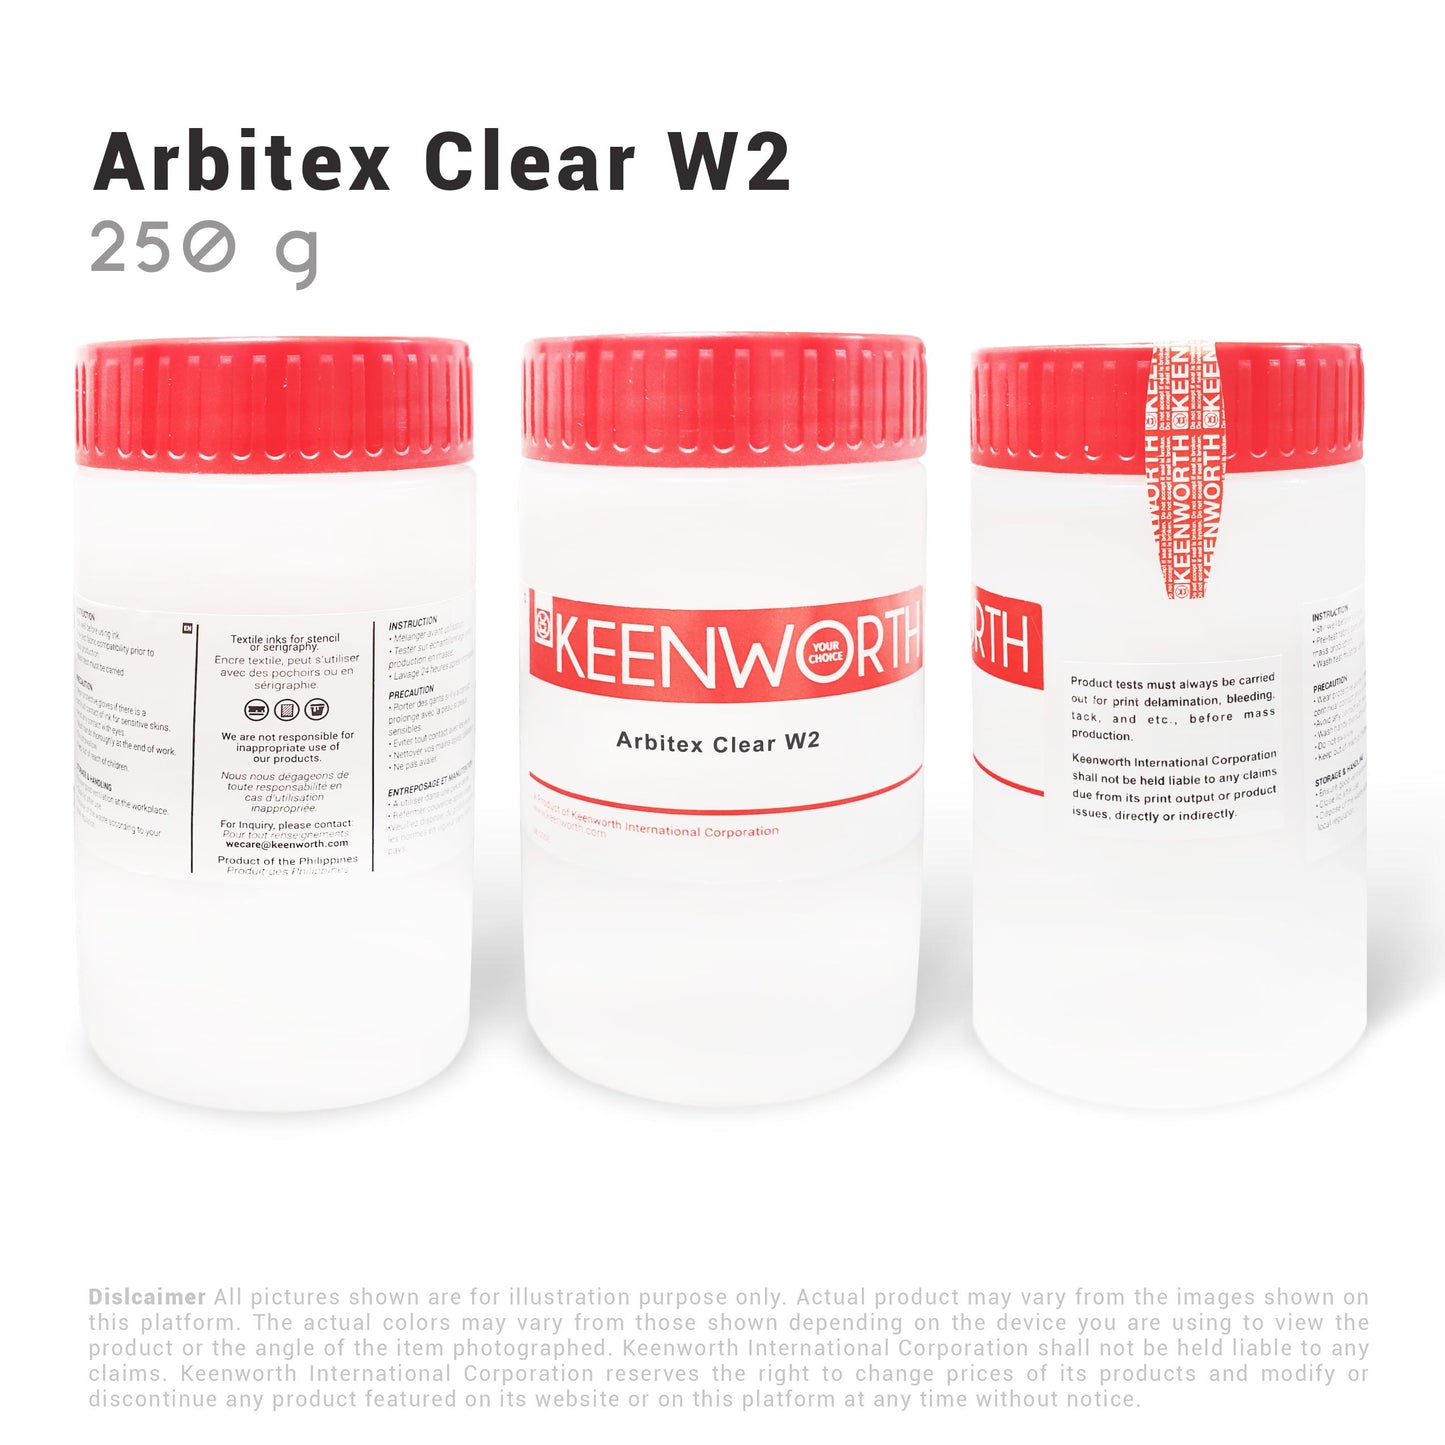 Arbitex Clear W2